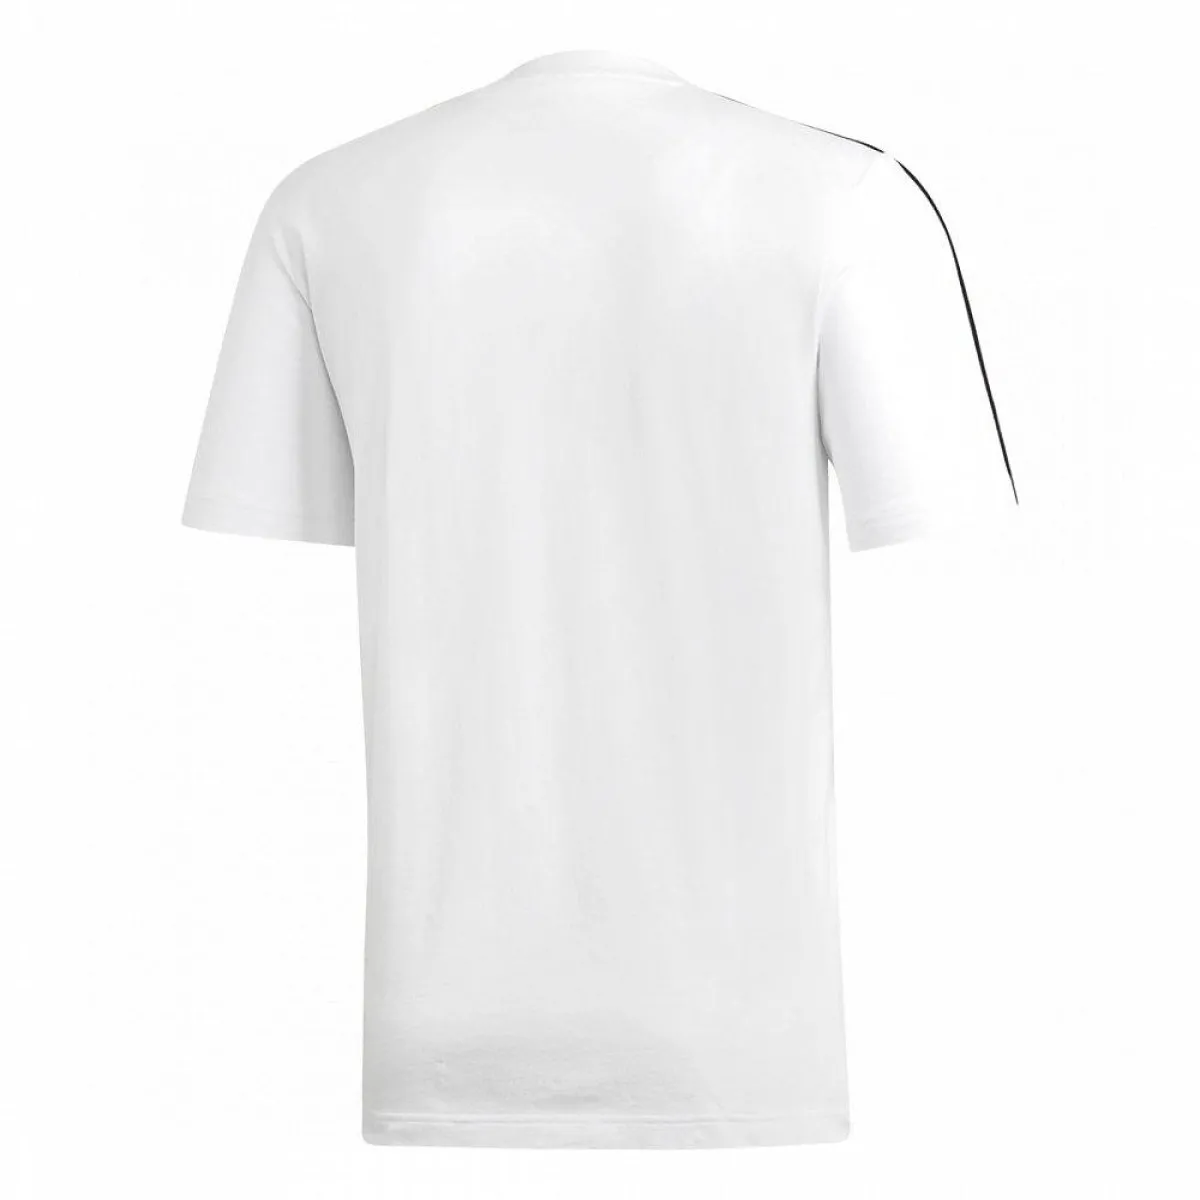 Camiseta adidas blanca con rayas negras en los hombros